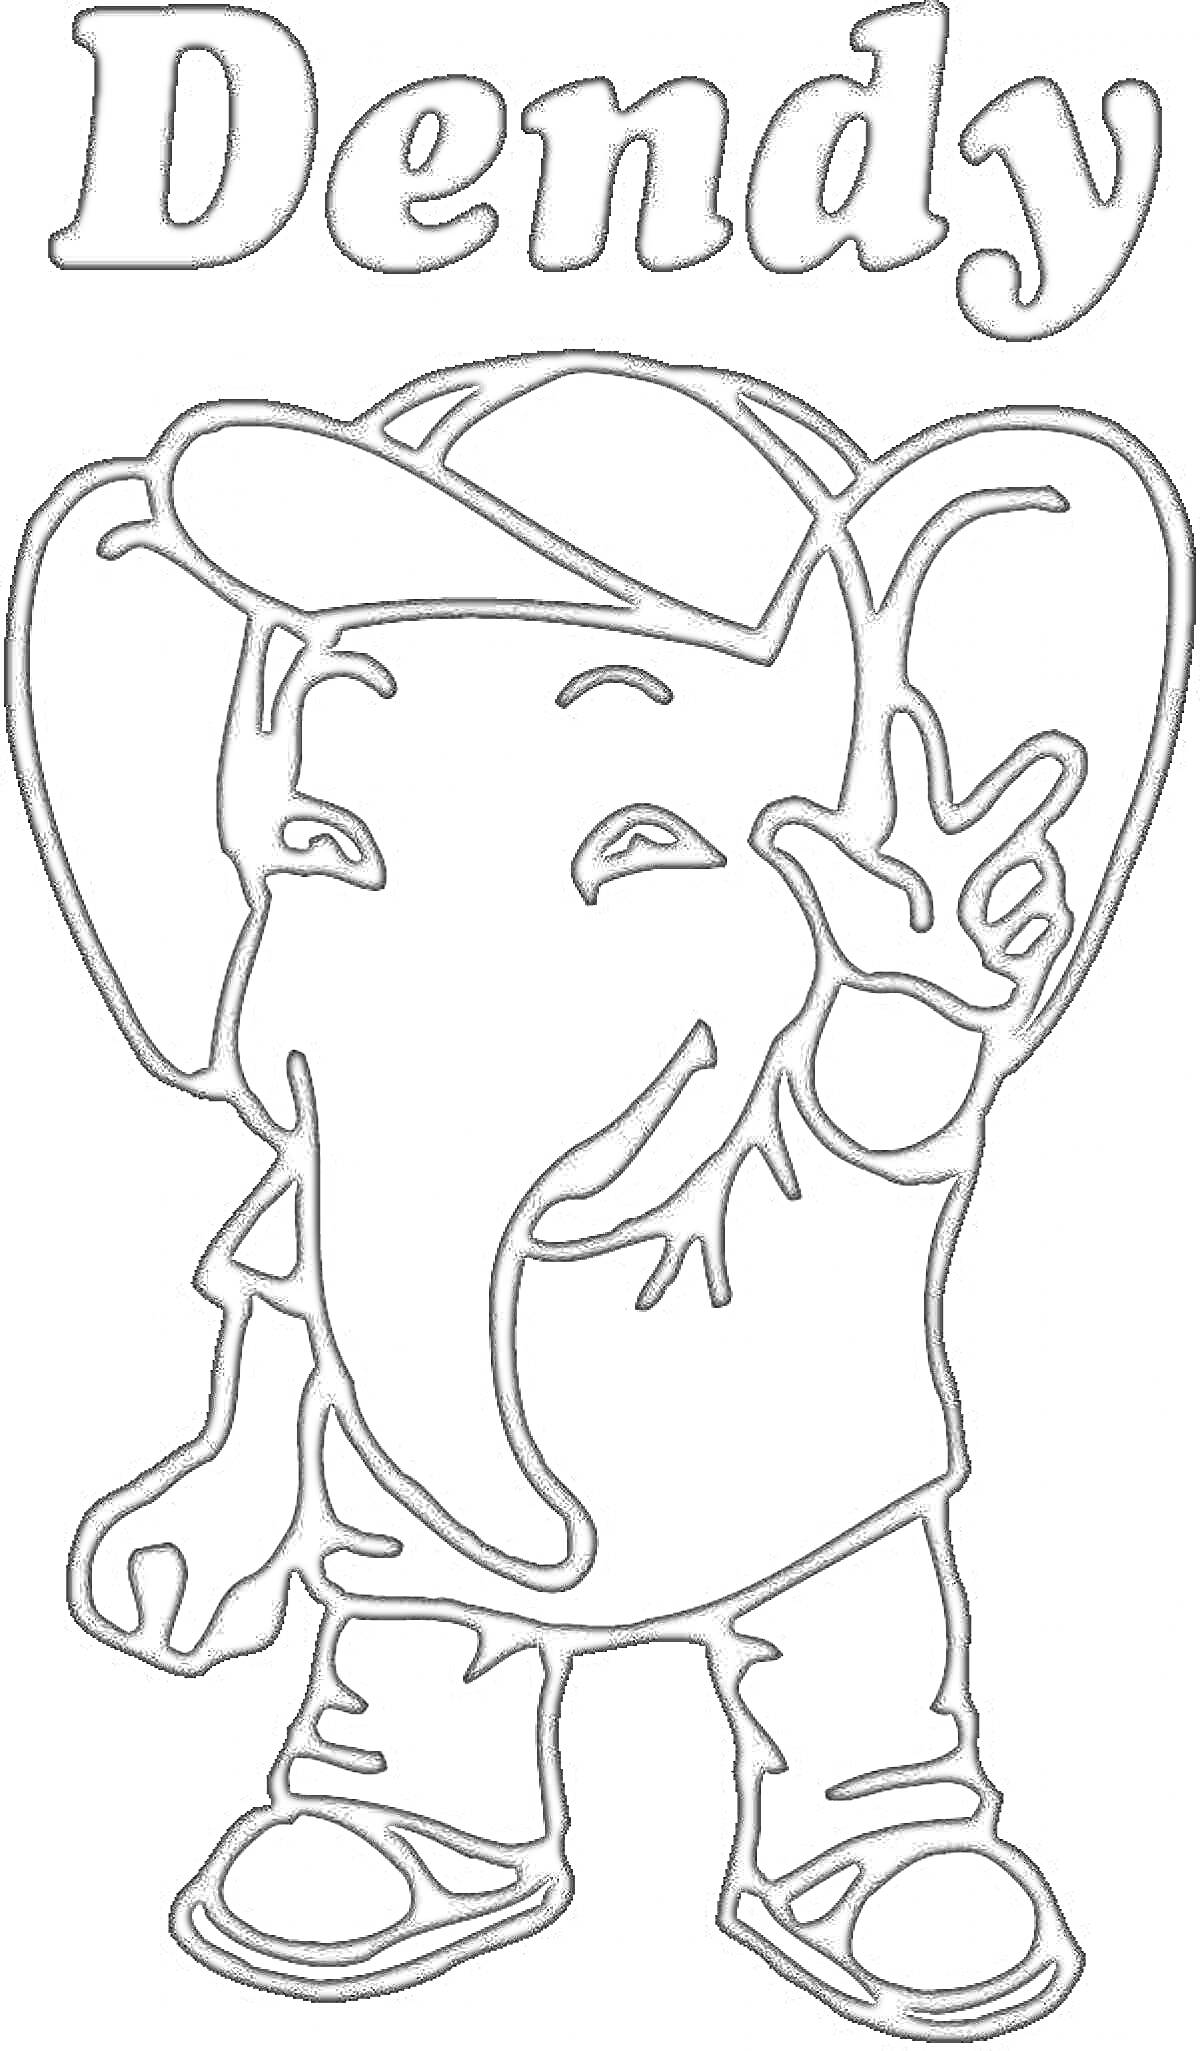 Раскраска Слон в кепке и одежде, с поднятыми двумя пальцами и надписью 